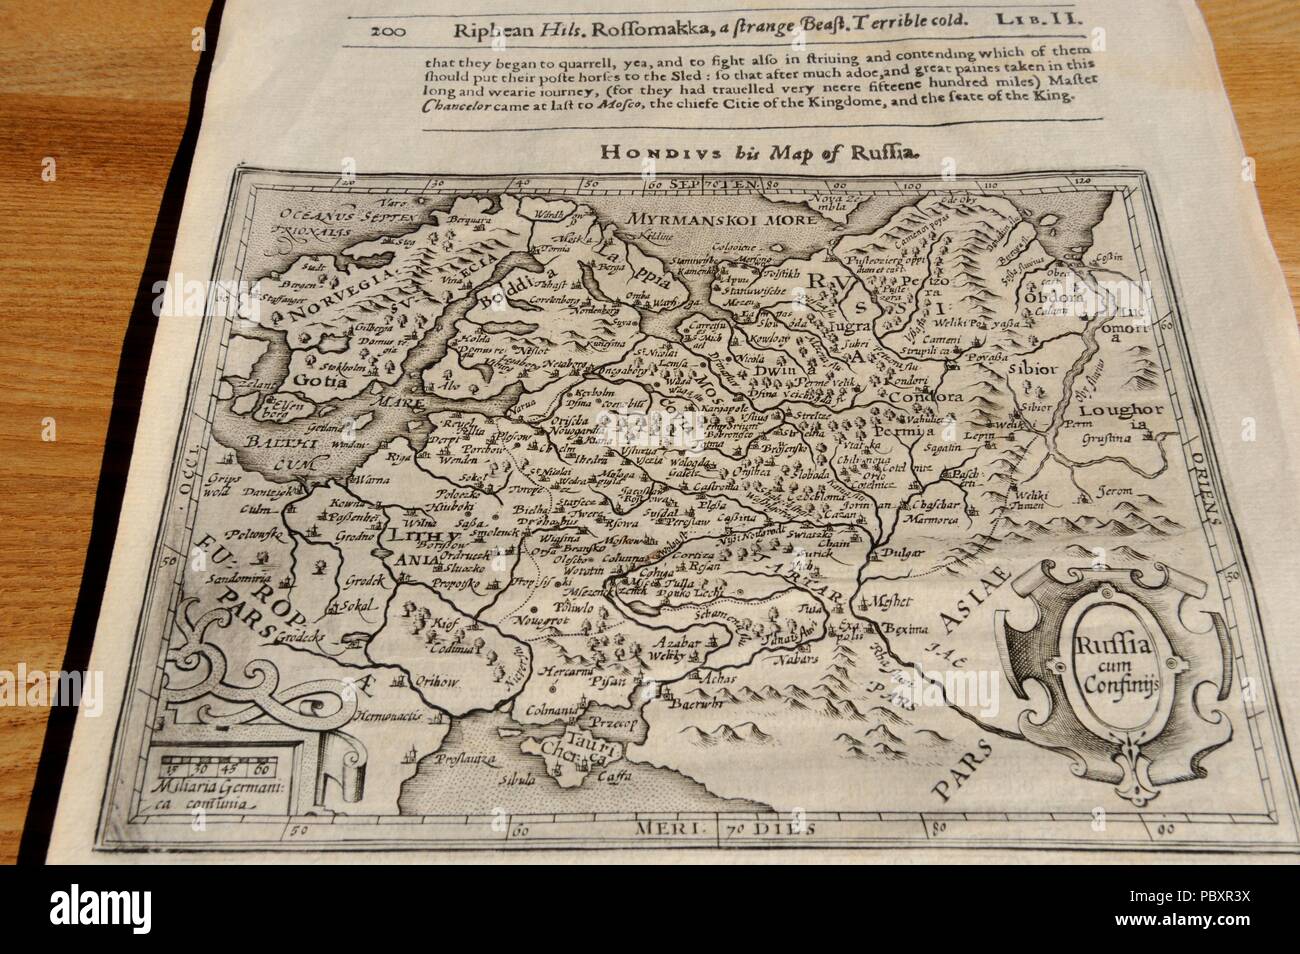 Le plan de la Russie et la Finlande par cartographe flamand Gerhardus Mercator (1512-1594). Après sa mort, certains de ses planches ont été vendues à cartogra flamand Banque D'Images